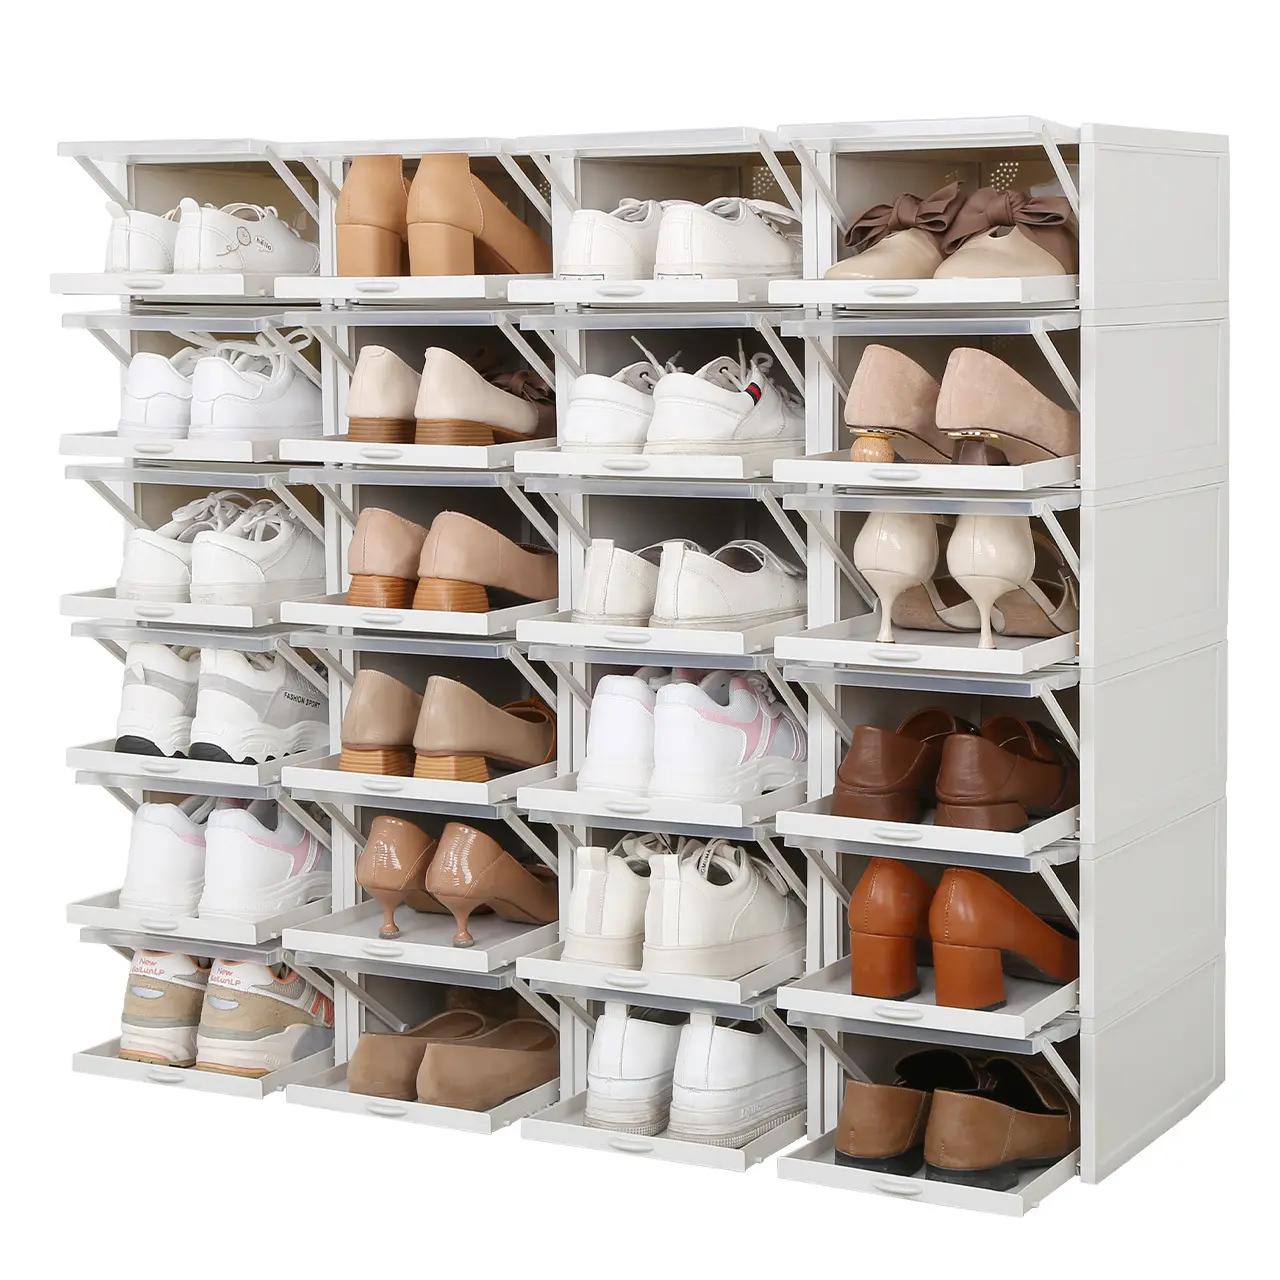 Blanco zapatos de plástico cajón organizador apilable bin gota caja claro transparente respetuoso con el medio ambiente caja de almacenamiento plegable